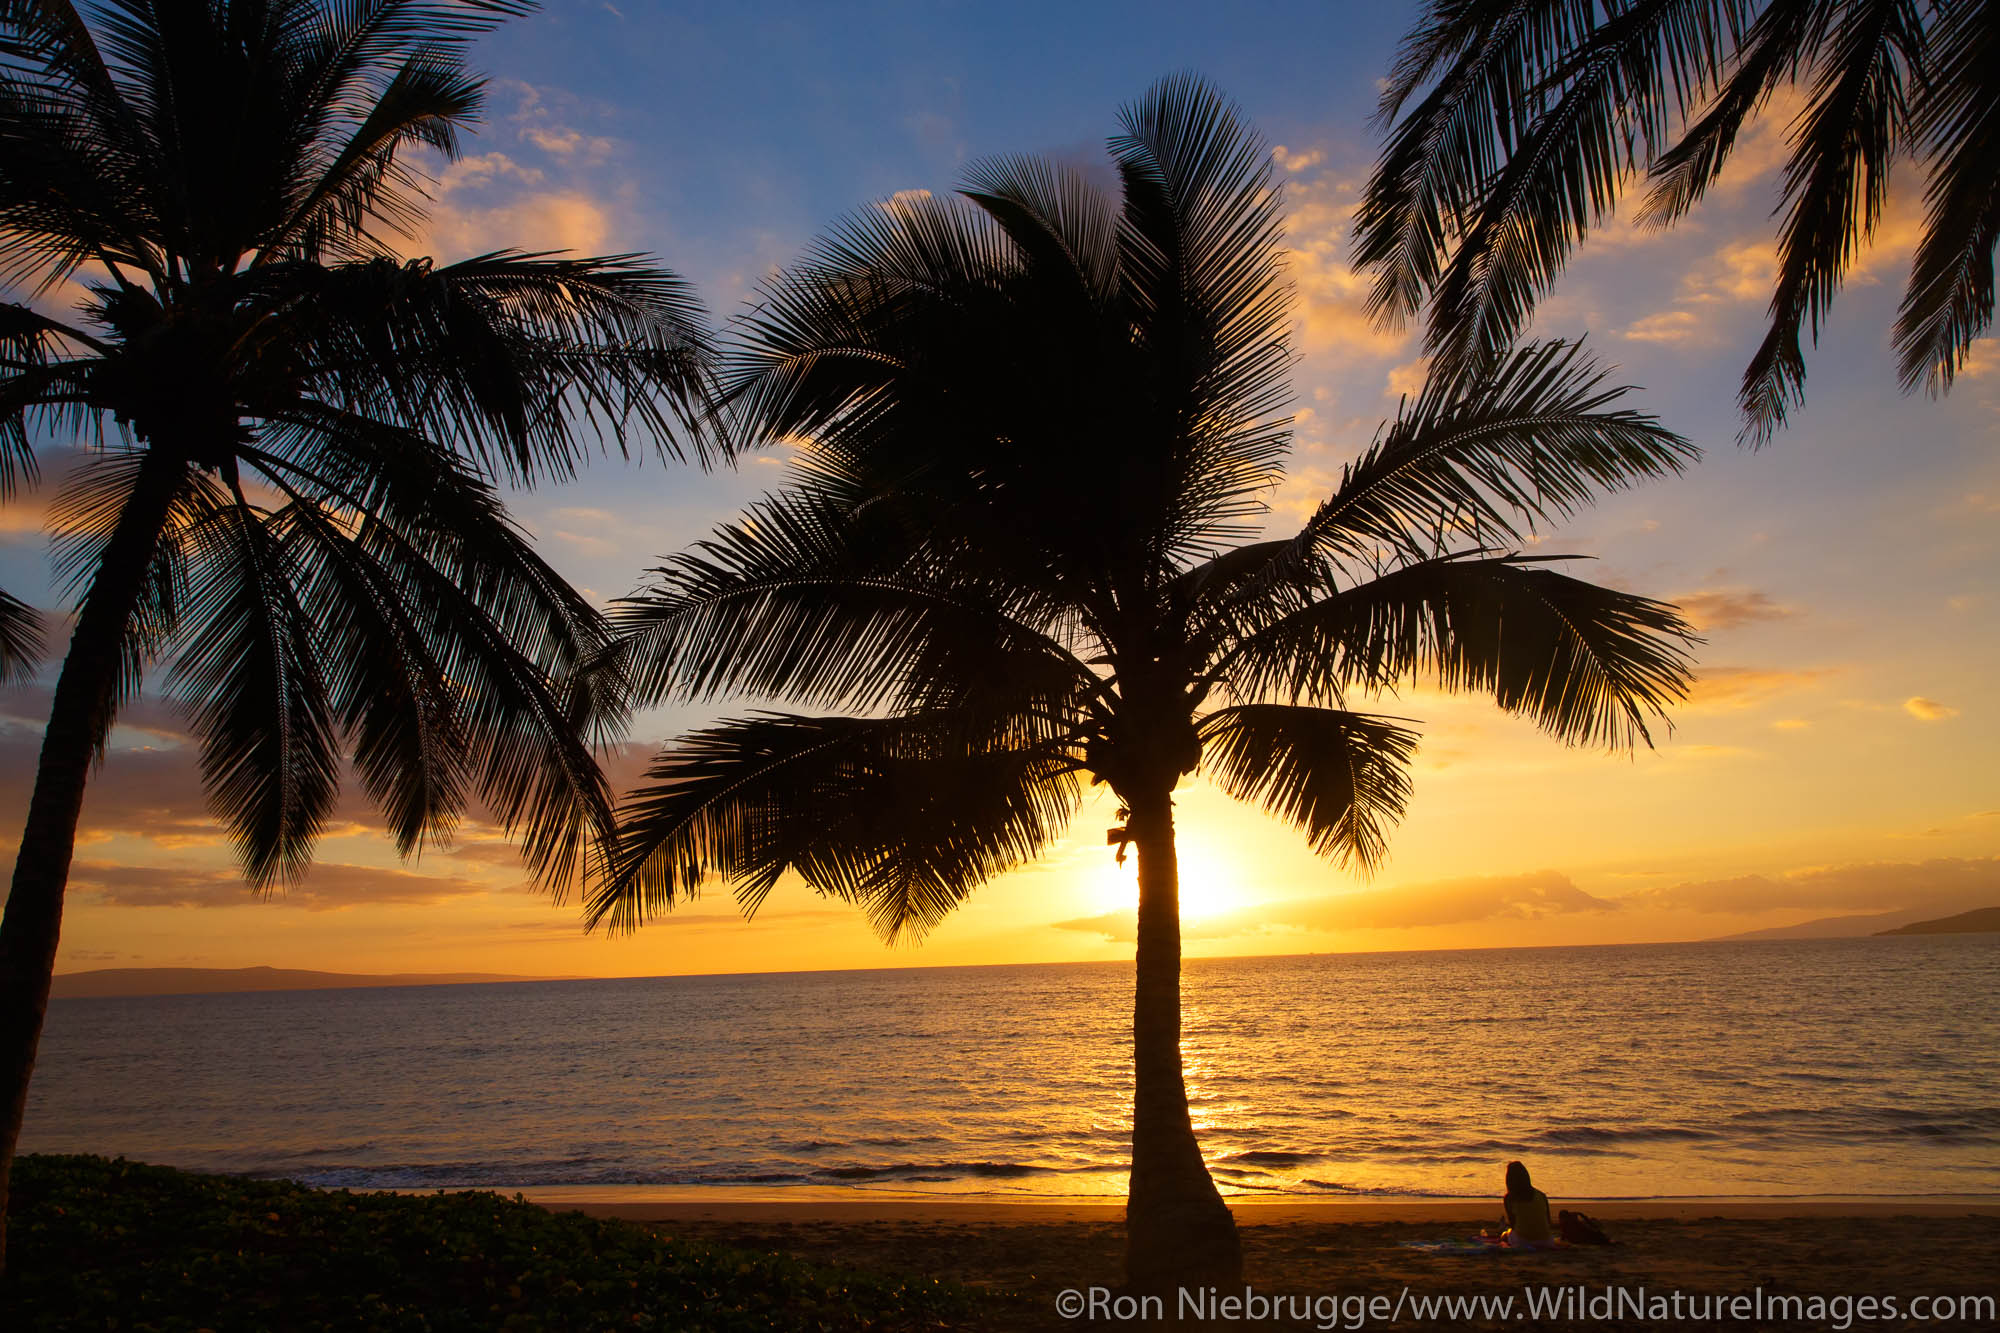 Sunset from Mai Poina 'Oe La'u Beach Park, Maui, Hawaii.Maui, Hawaii.